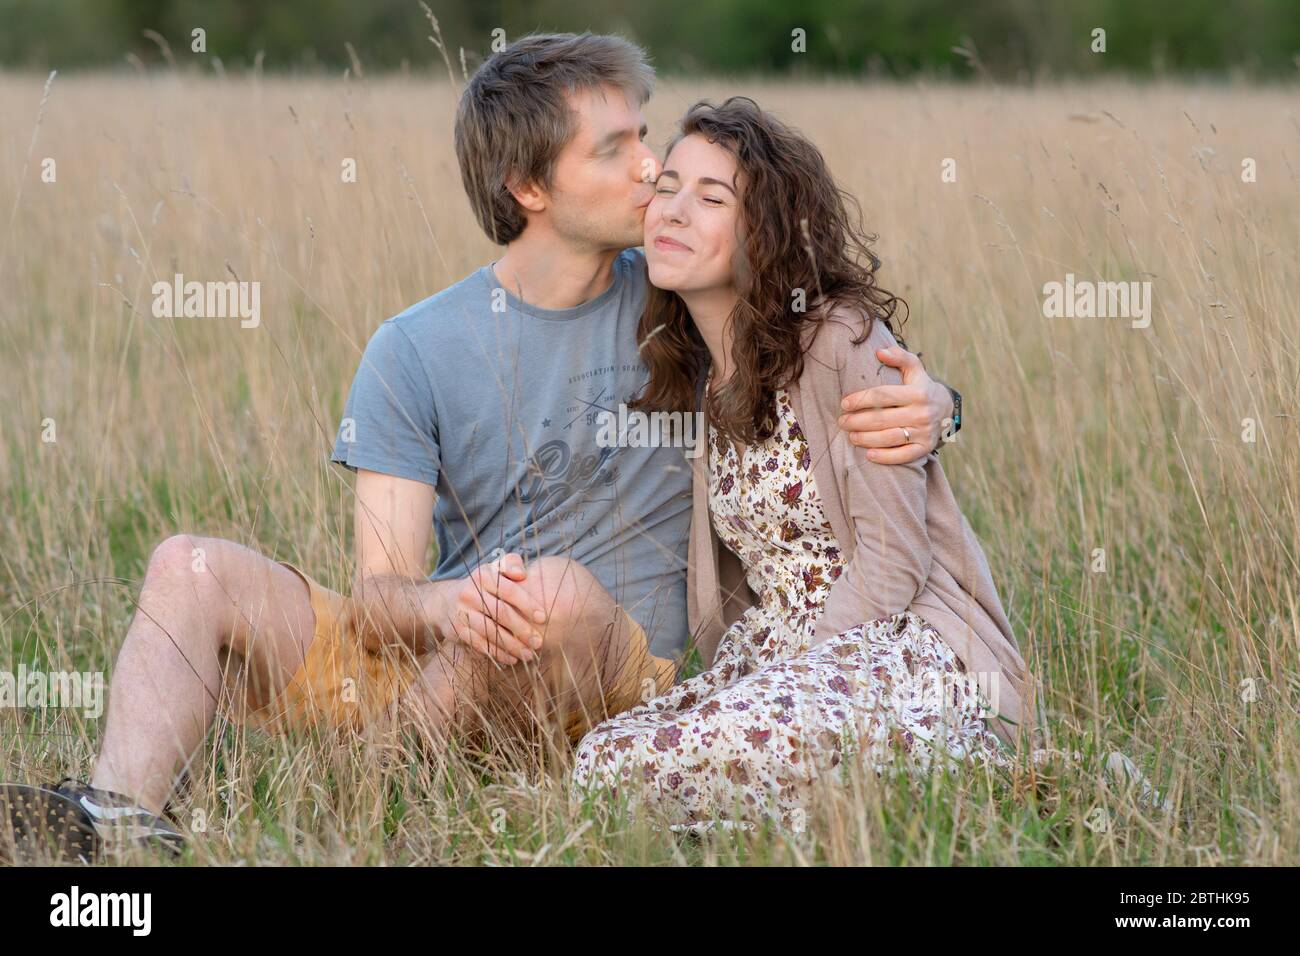 Ein junges attraktives schönes Paar lächelt zusammen in einem schönen Außenfeld zeigt ihre Liebe zueinander und küssen Stockfoto